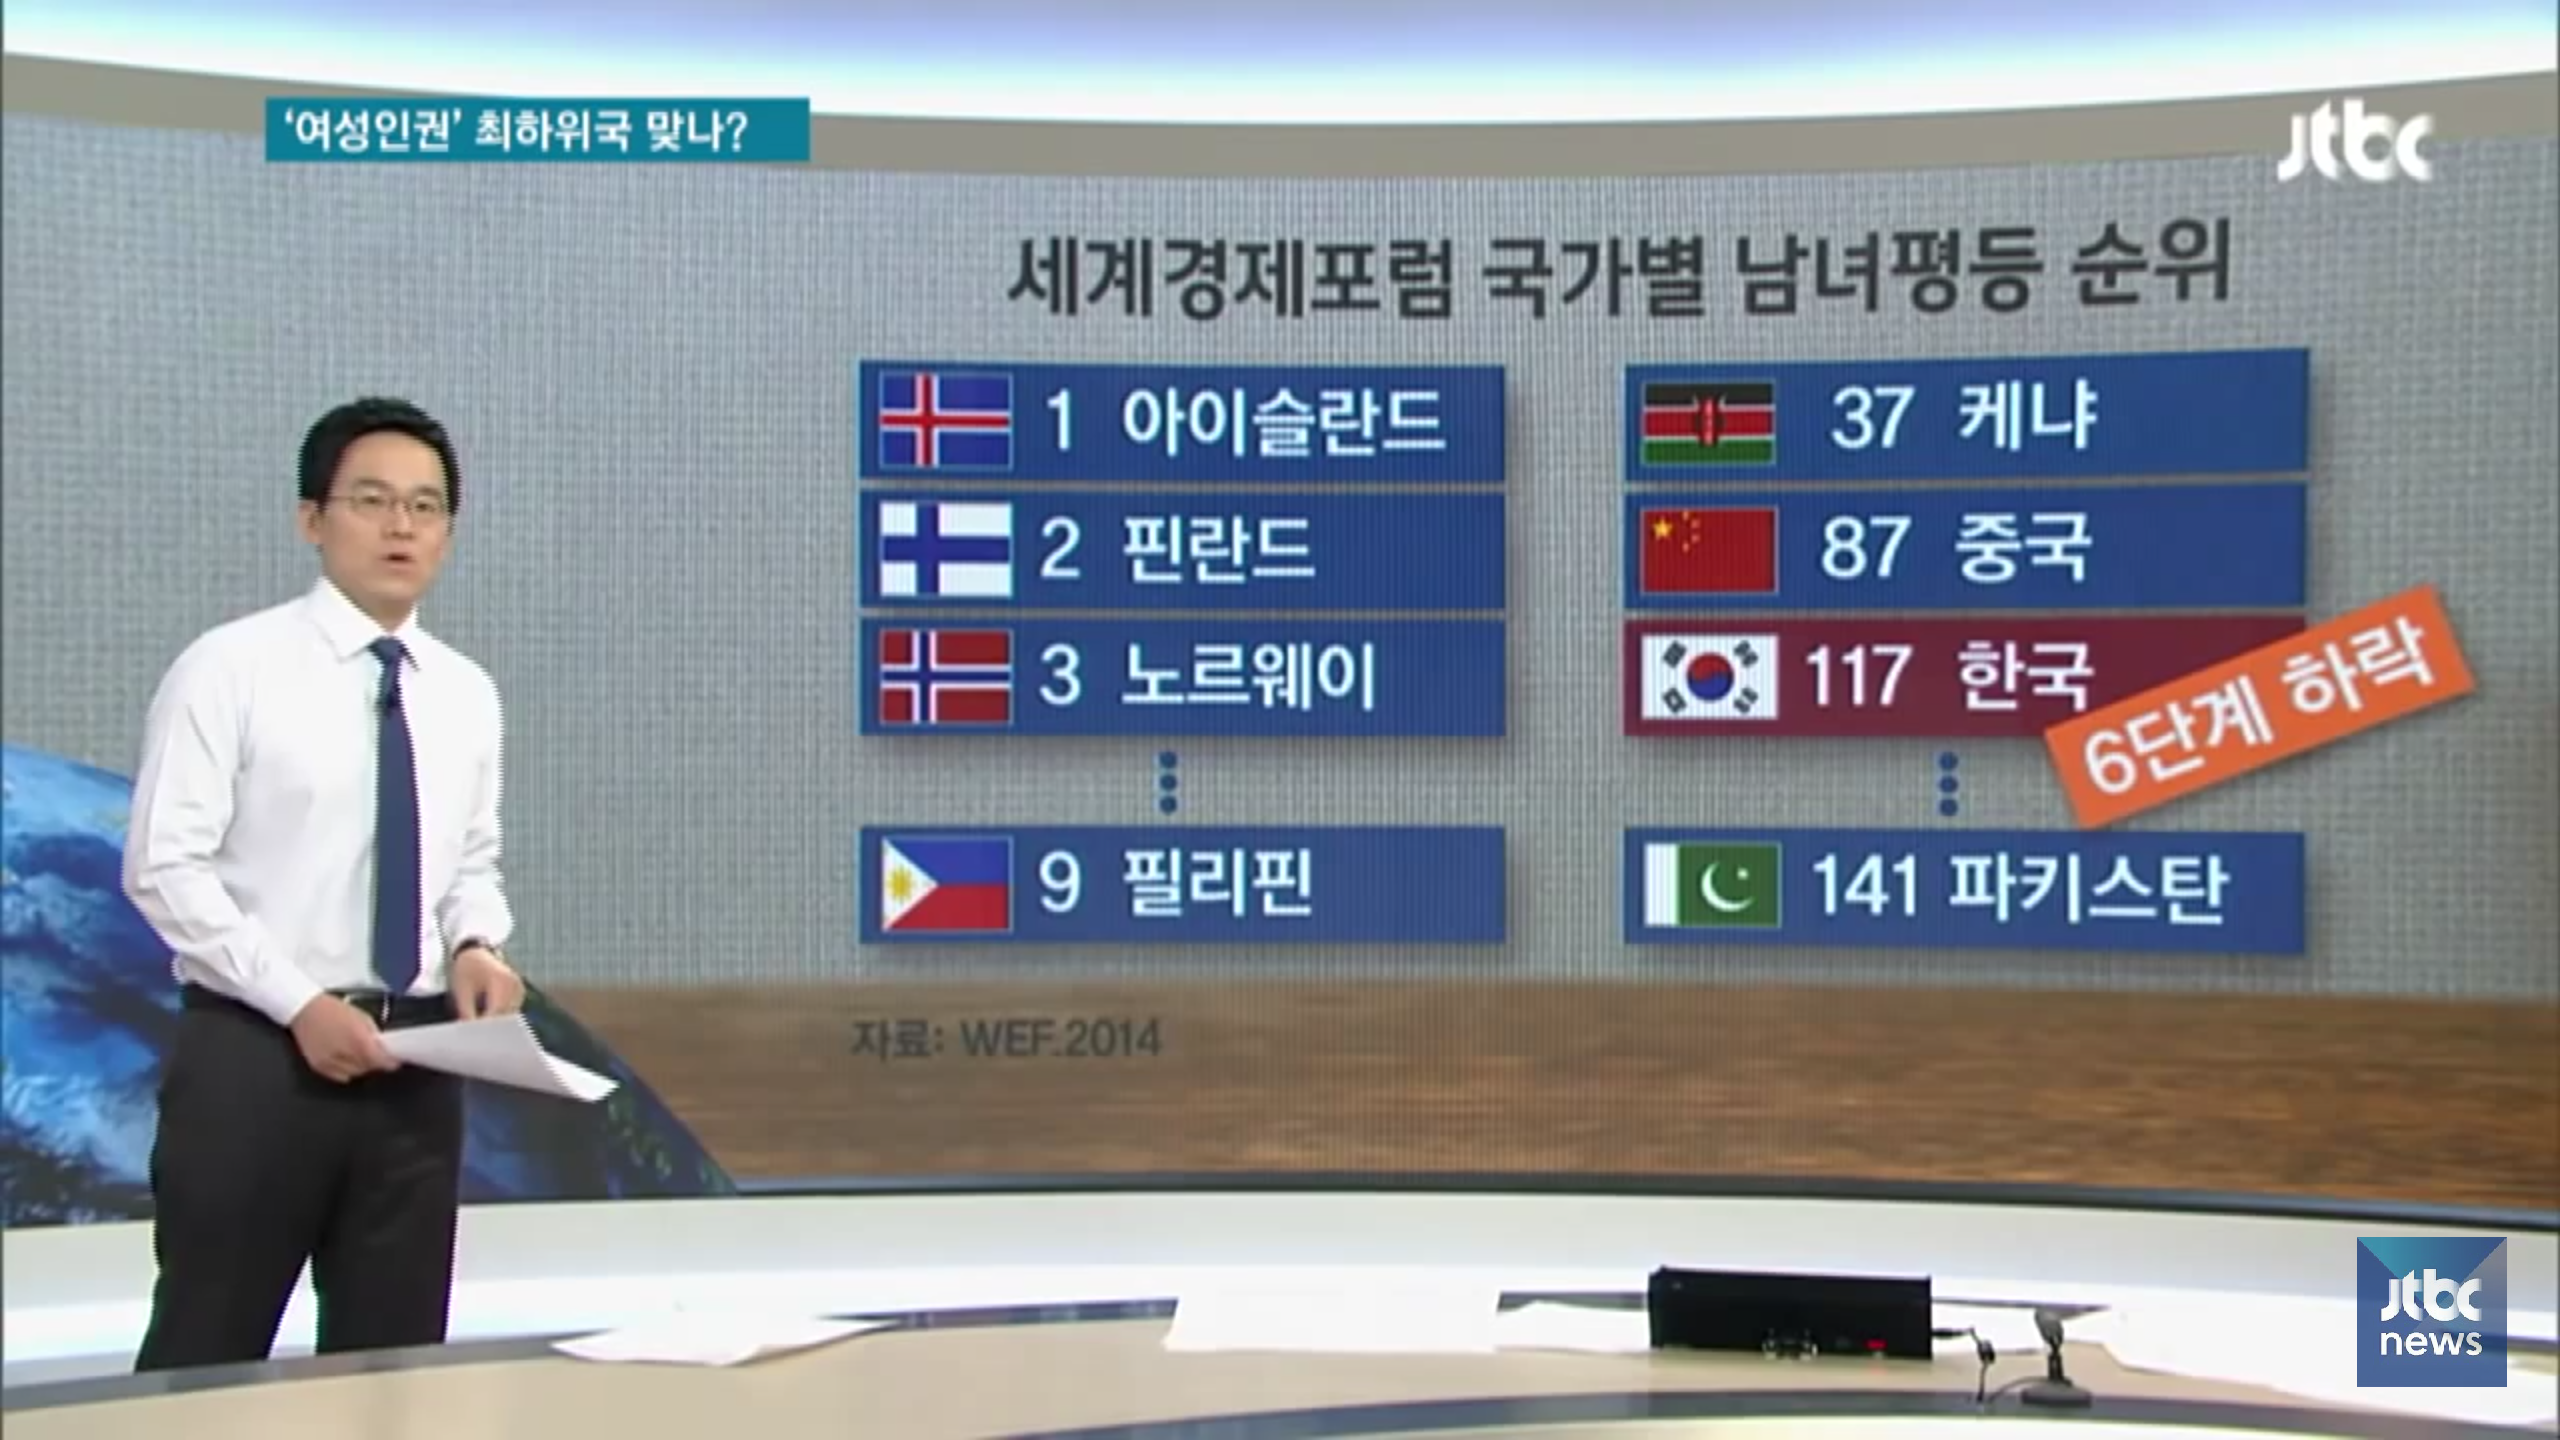 Screenshot_2016-07-28-17-32-18.png : jtbc주의)국제식 계산법에 한국을 끼워맞추면 생기는 일.utube(스샷추가)